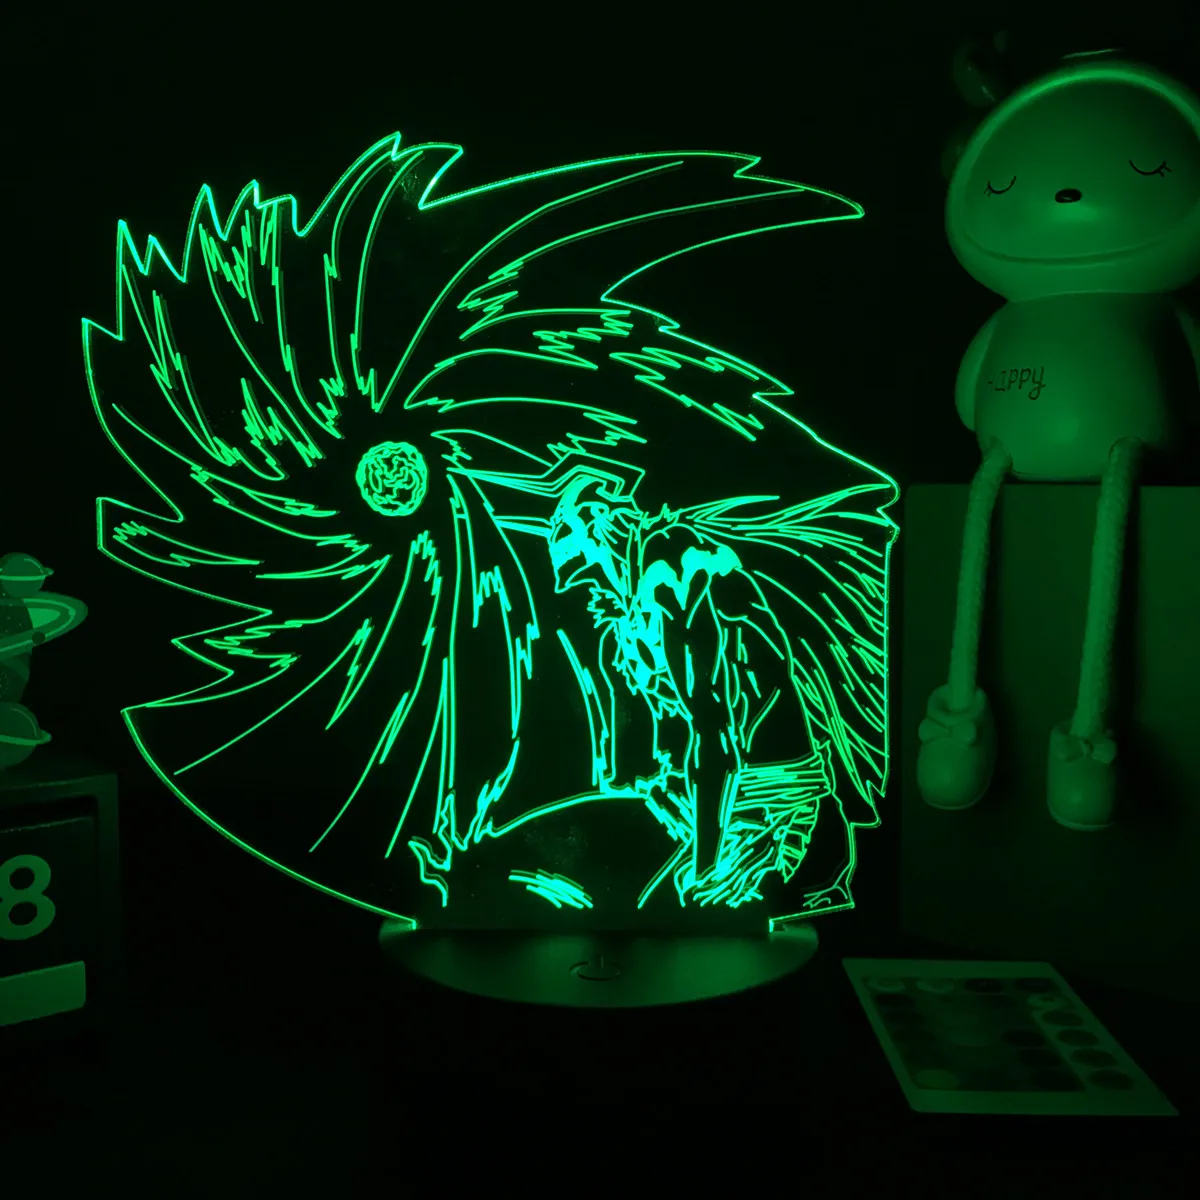 3D Anime Lamp Bleach Led Night Light for Kids Bedroom Decoration Bedside Lamp Gift for Children Study Room Decor Light 3d home depot dinosaur light Night Lights